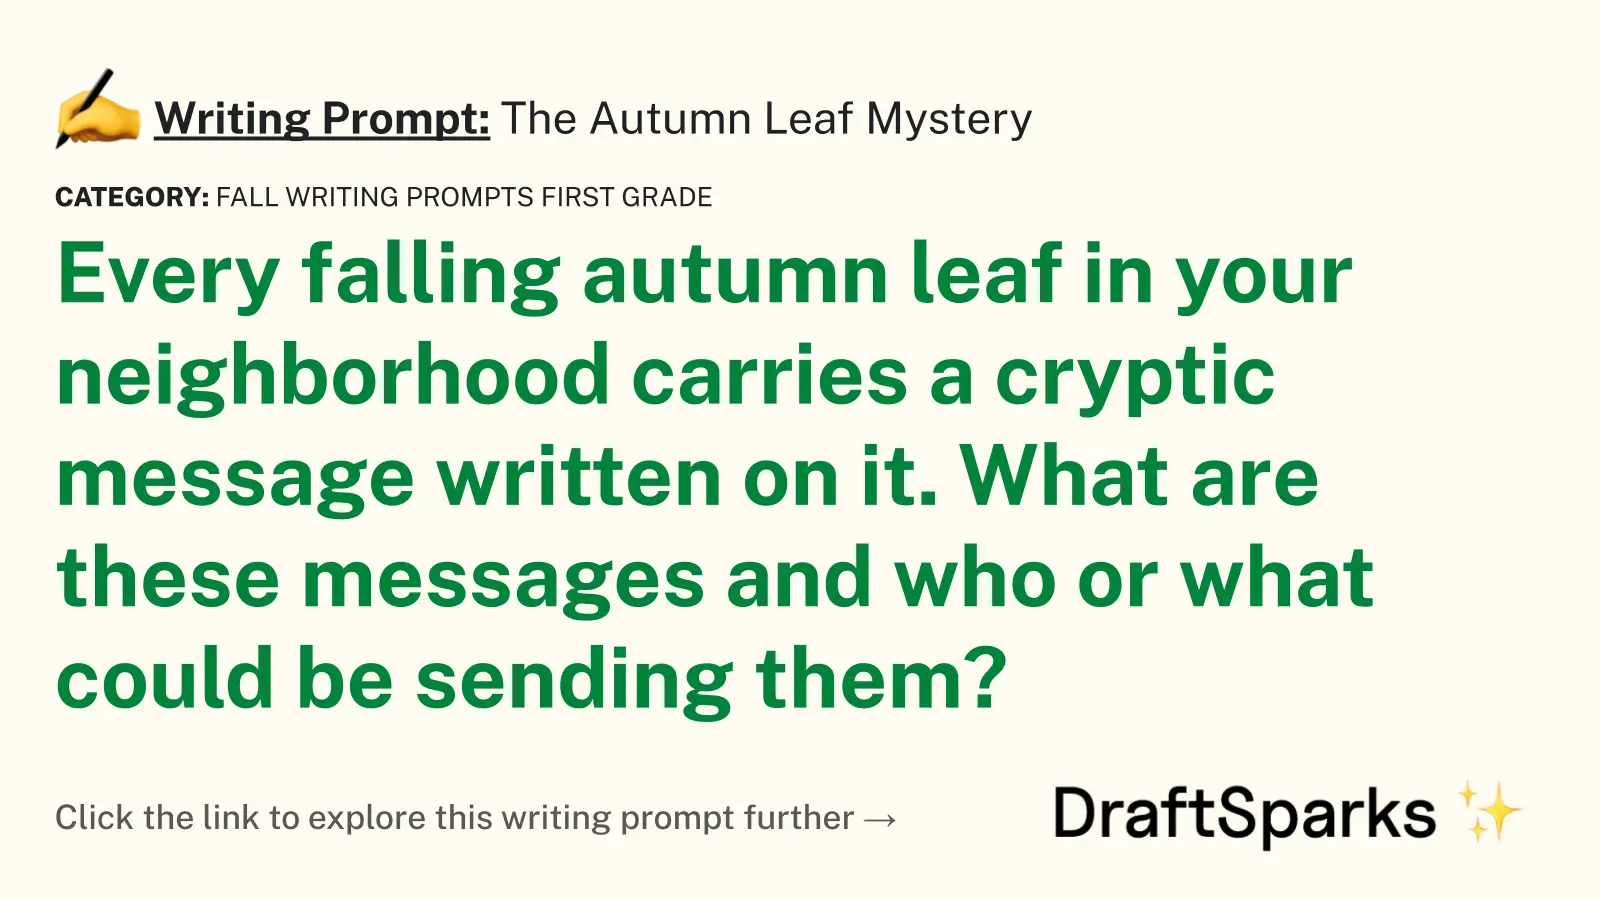 The Autumn Leaf Mystery